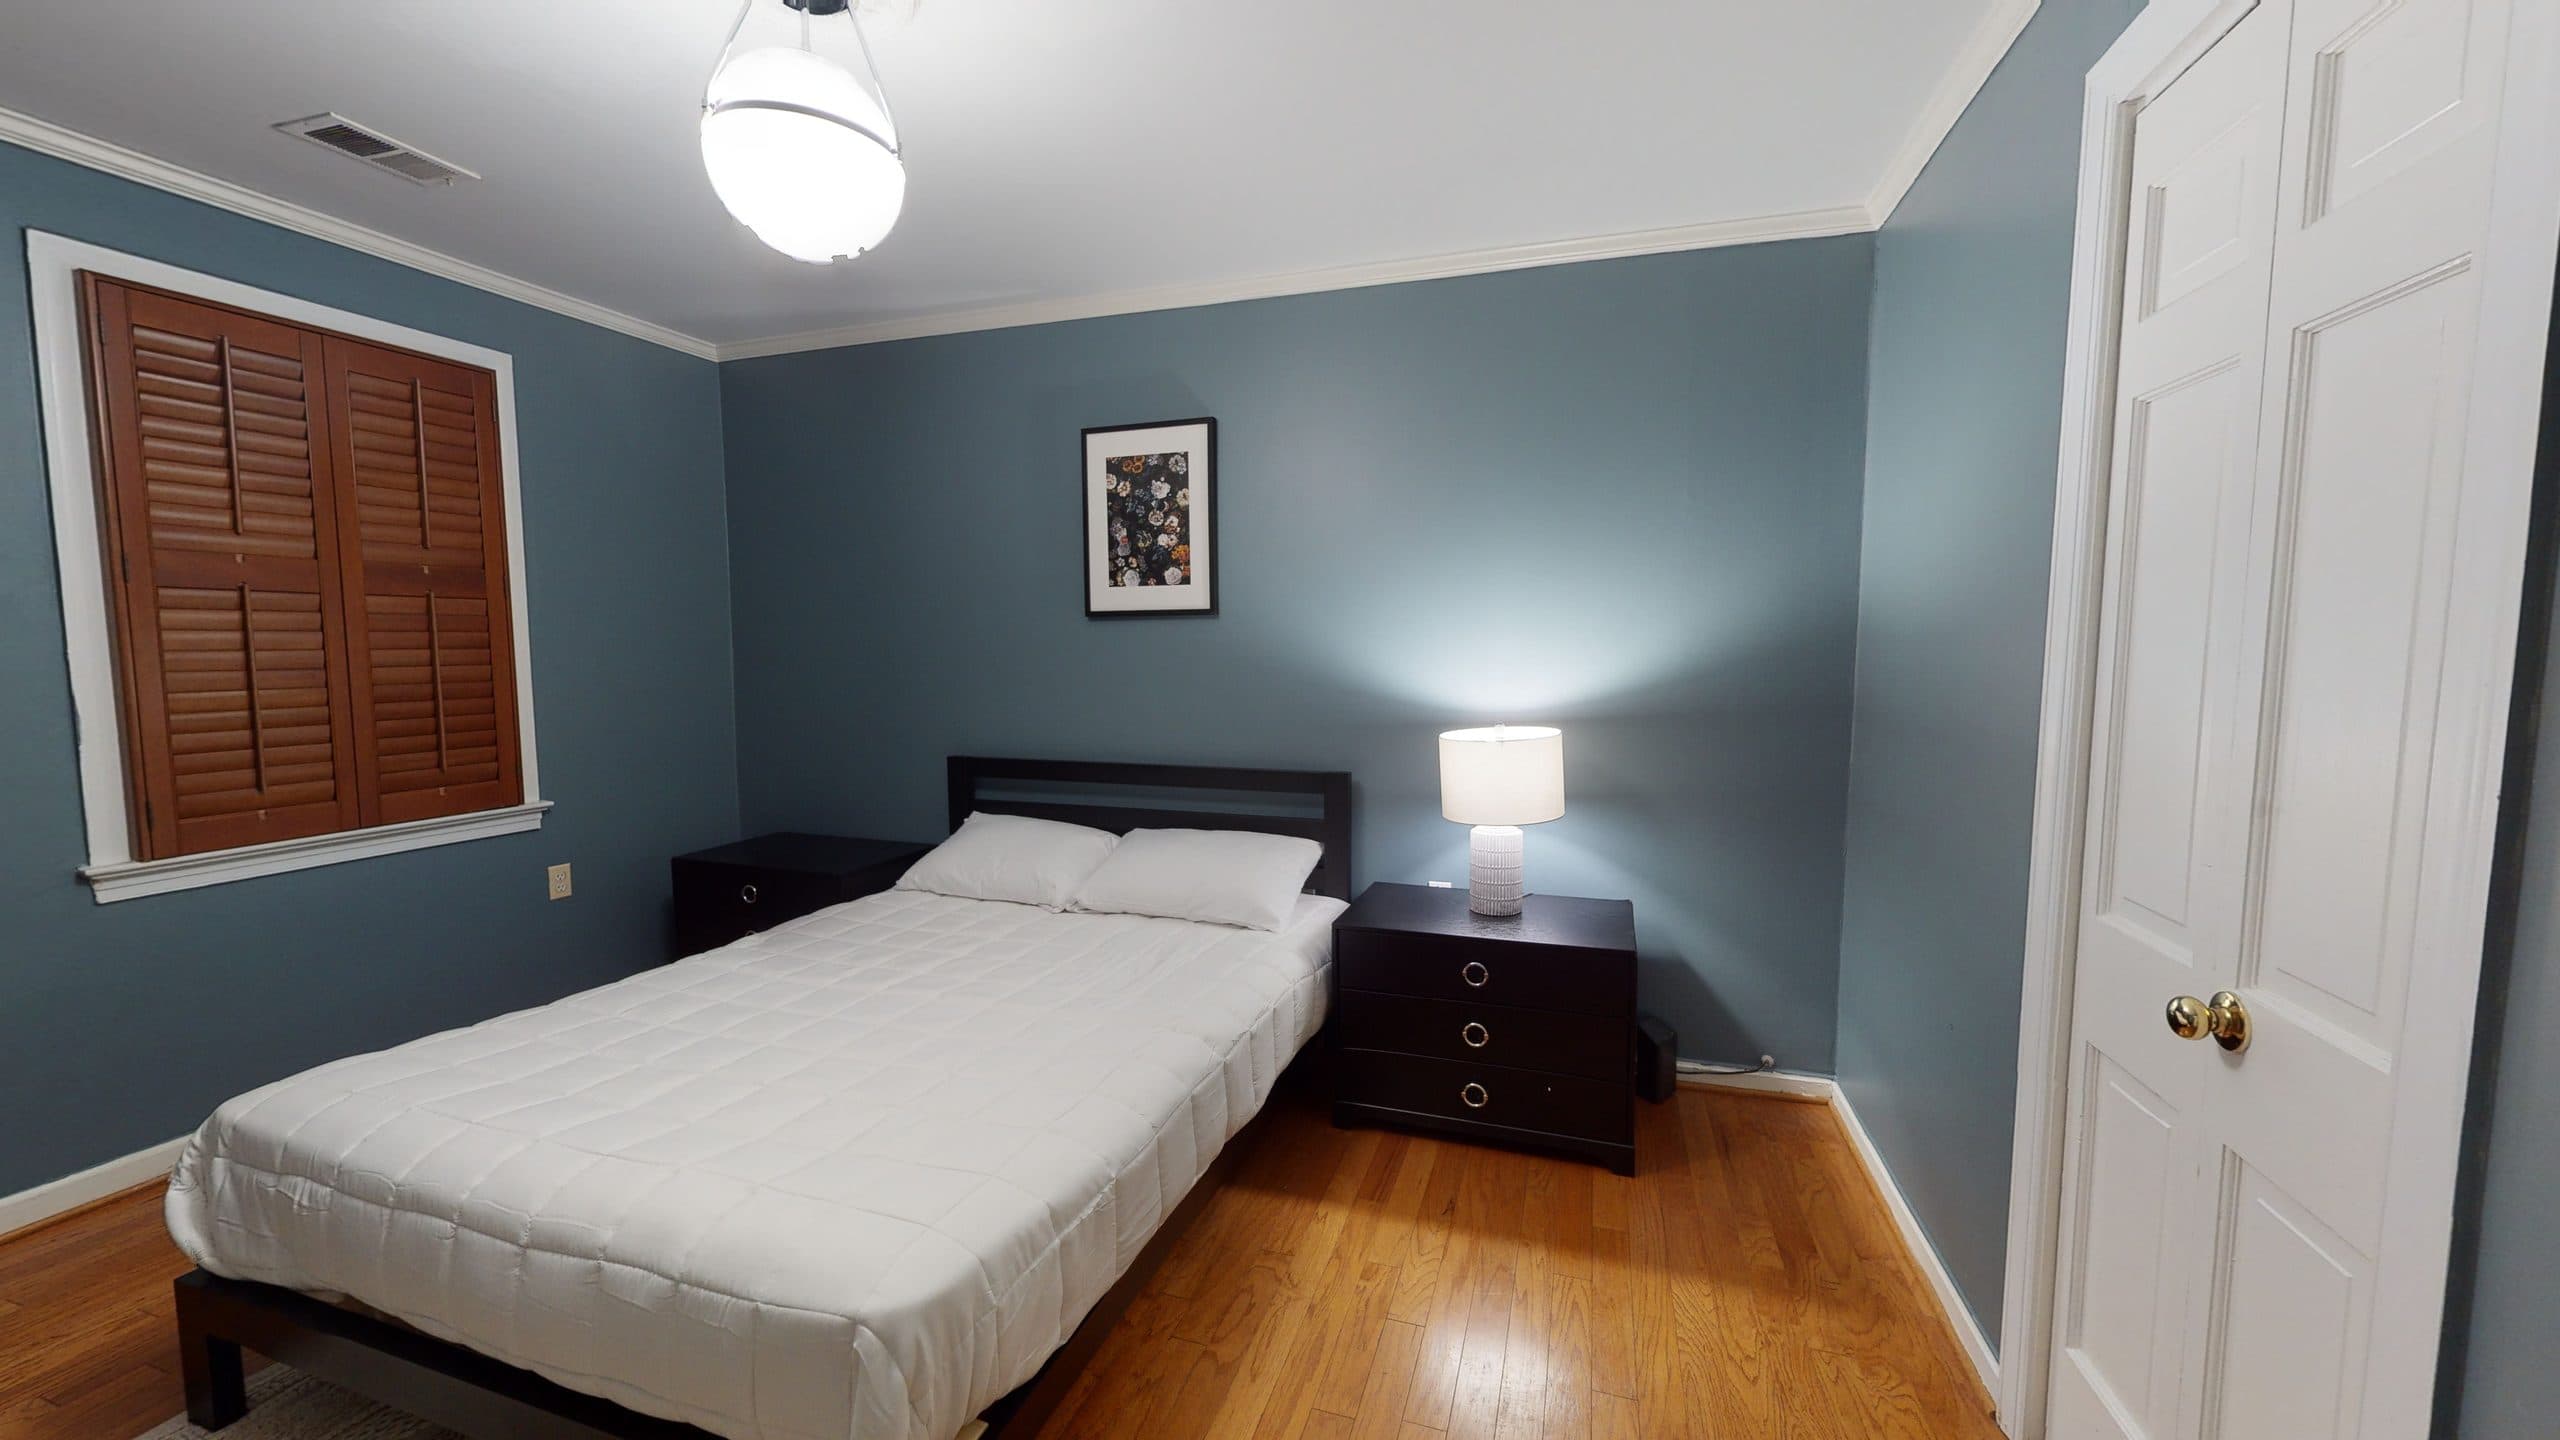 Photo 13 of #1428: Queen Bedroom 2C at June Homes